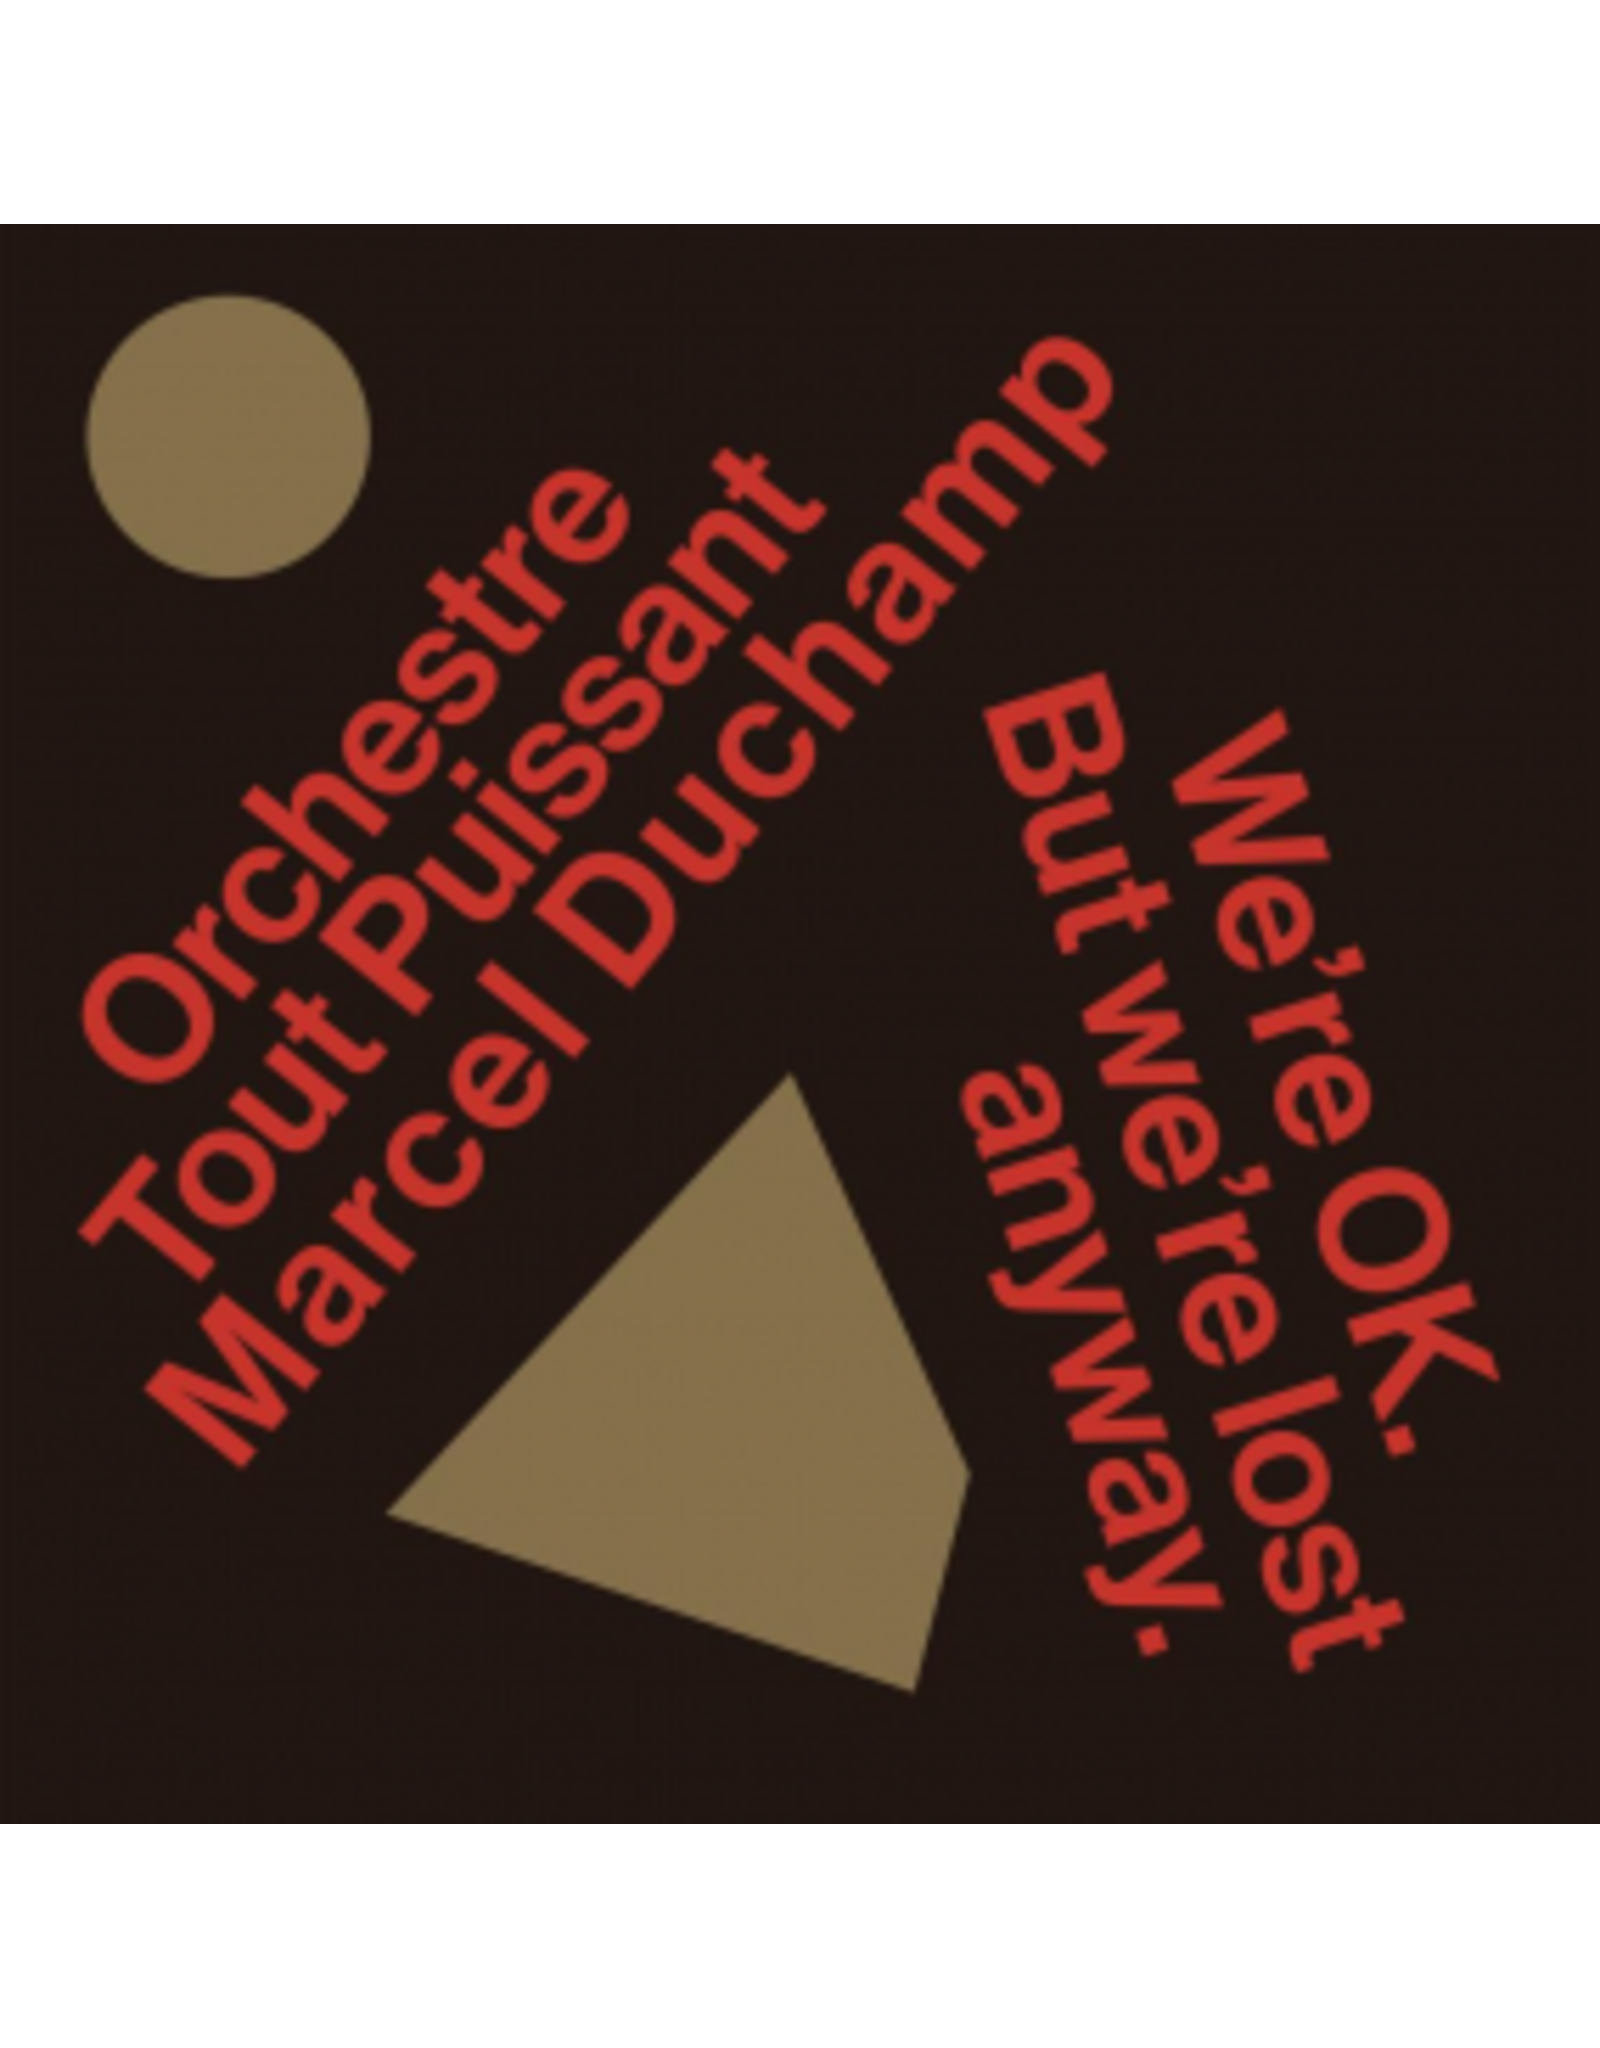 Bongo Joe Orchestre Tout Puissant Marcel Duchamp: We're Ok. But we're lost anyway LP